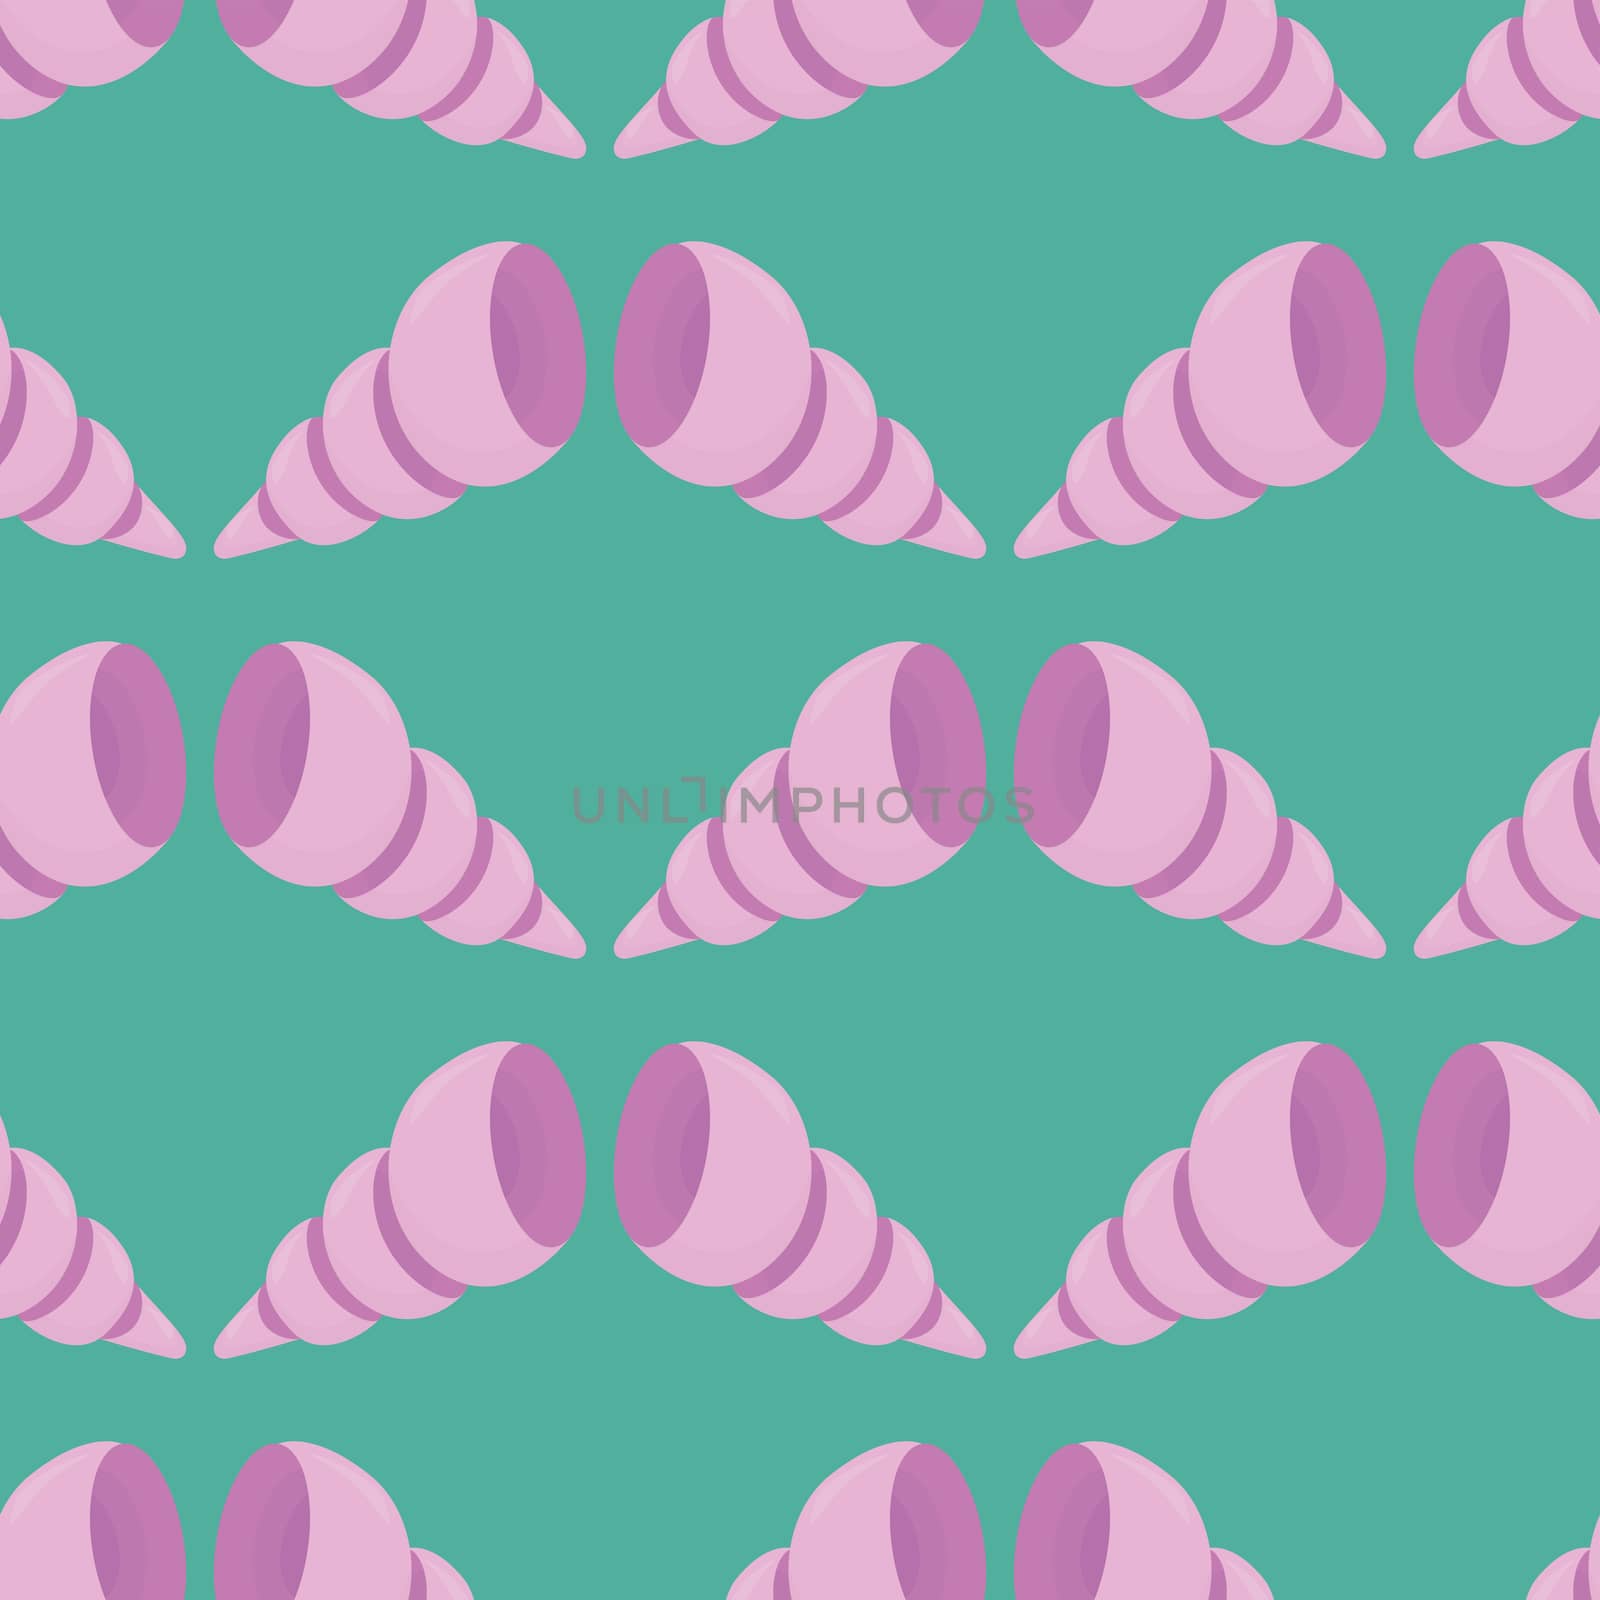 Ocean shells pattern , illustration, vector on white background